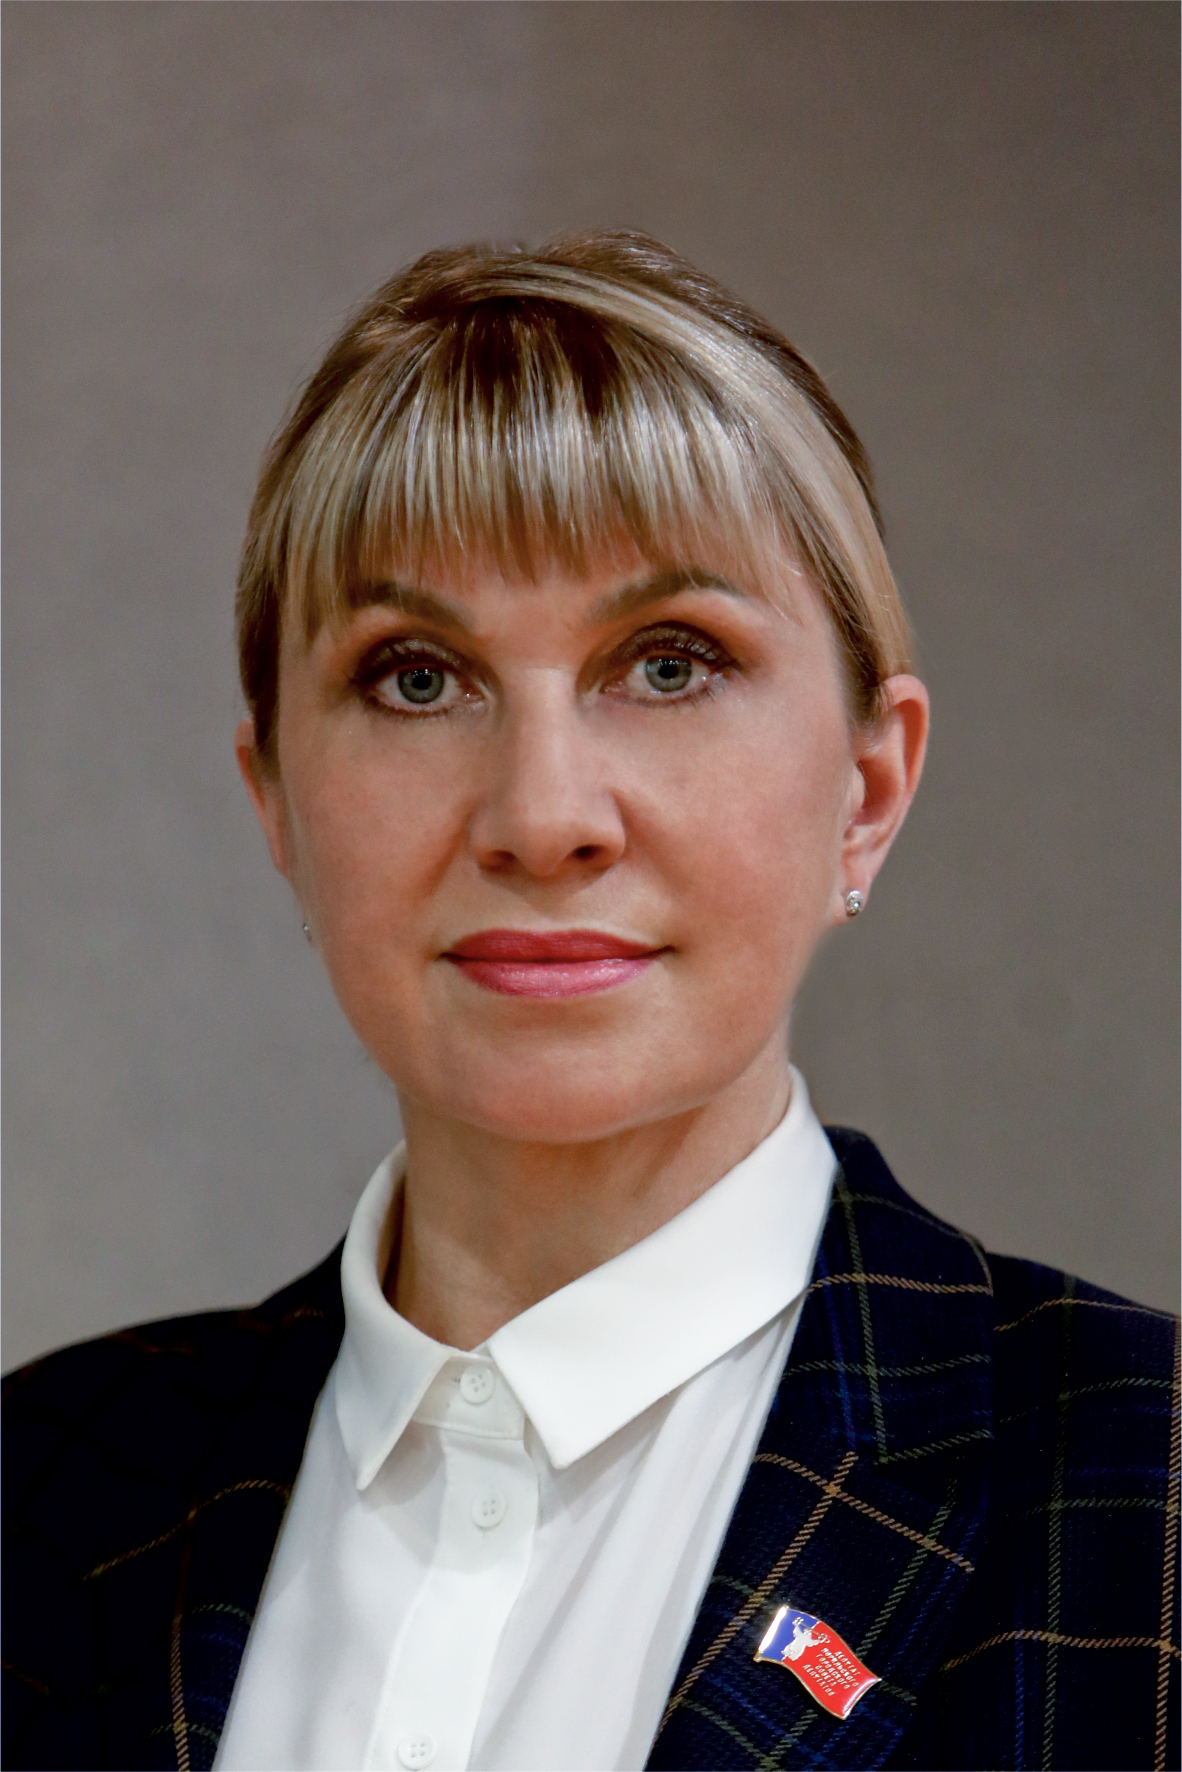 Скорик Татьяна Васильевна